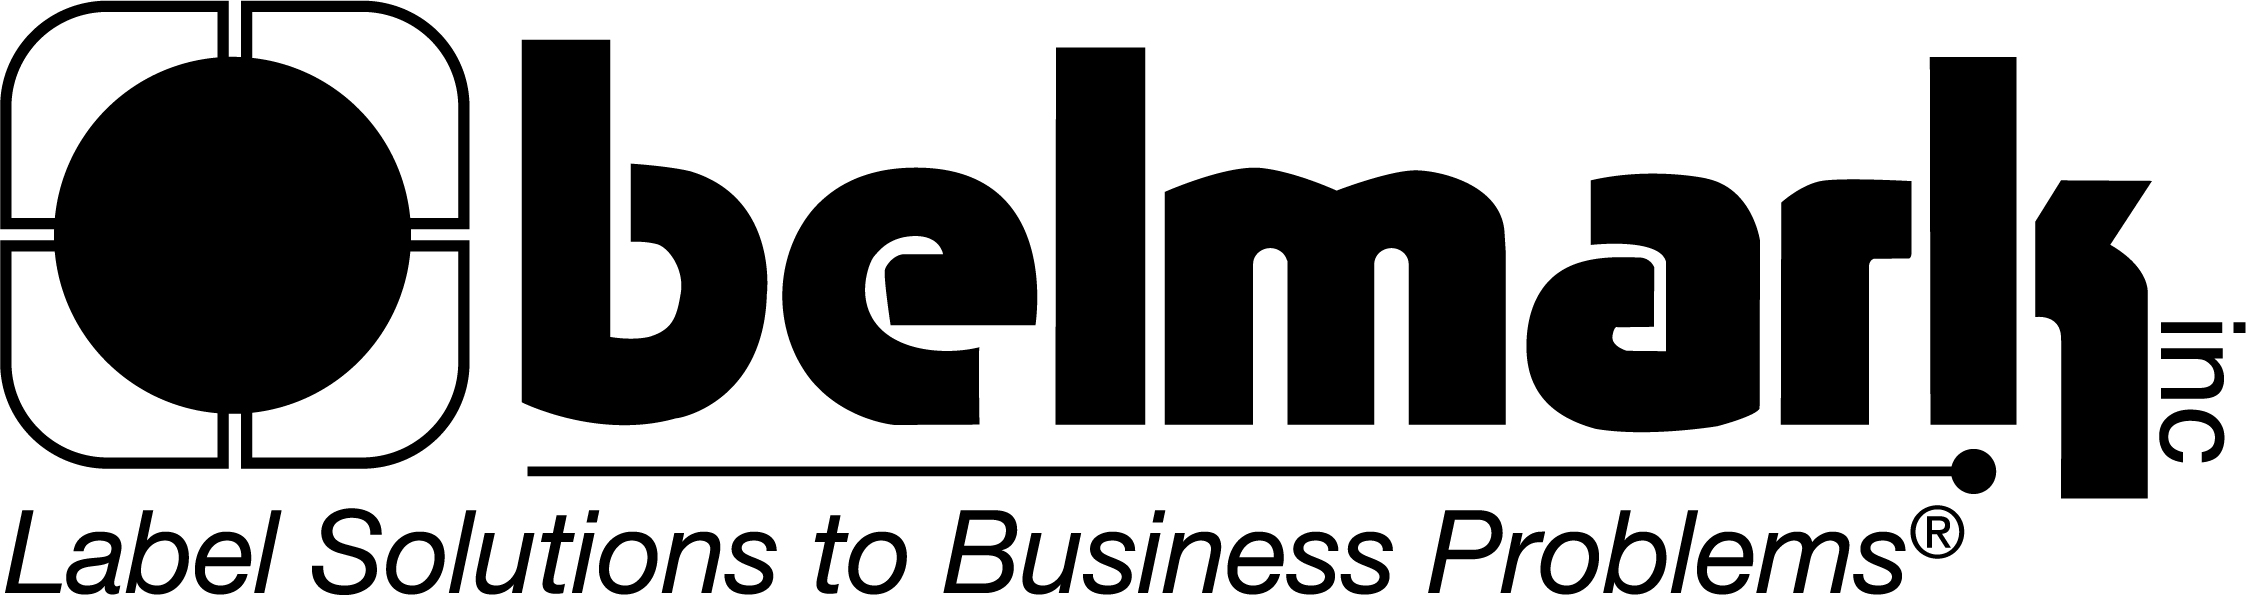 Belmark Logo